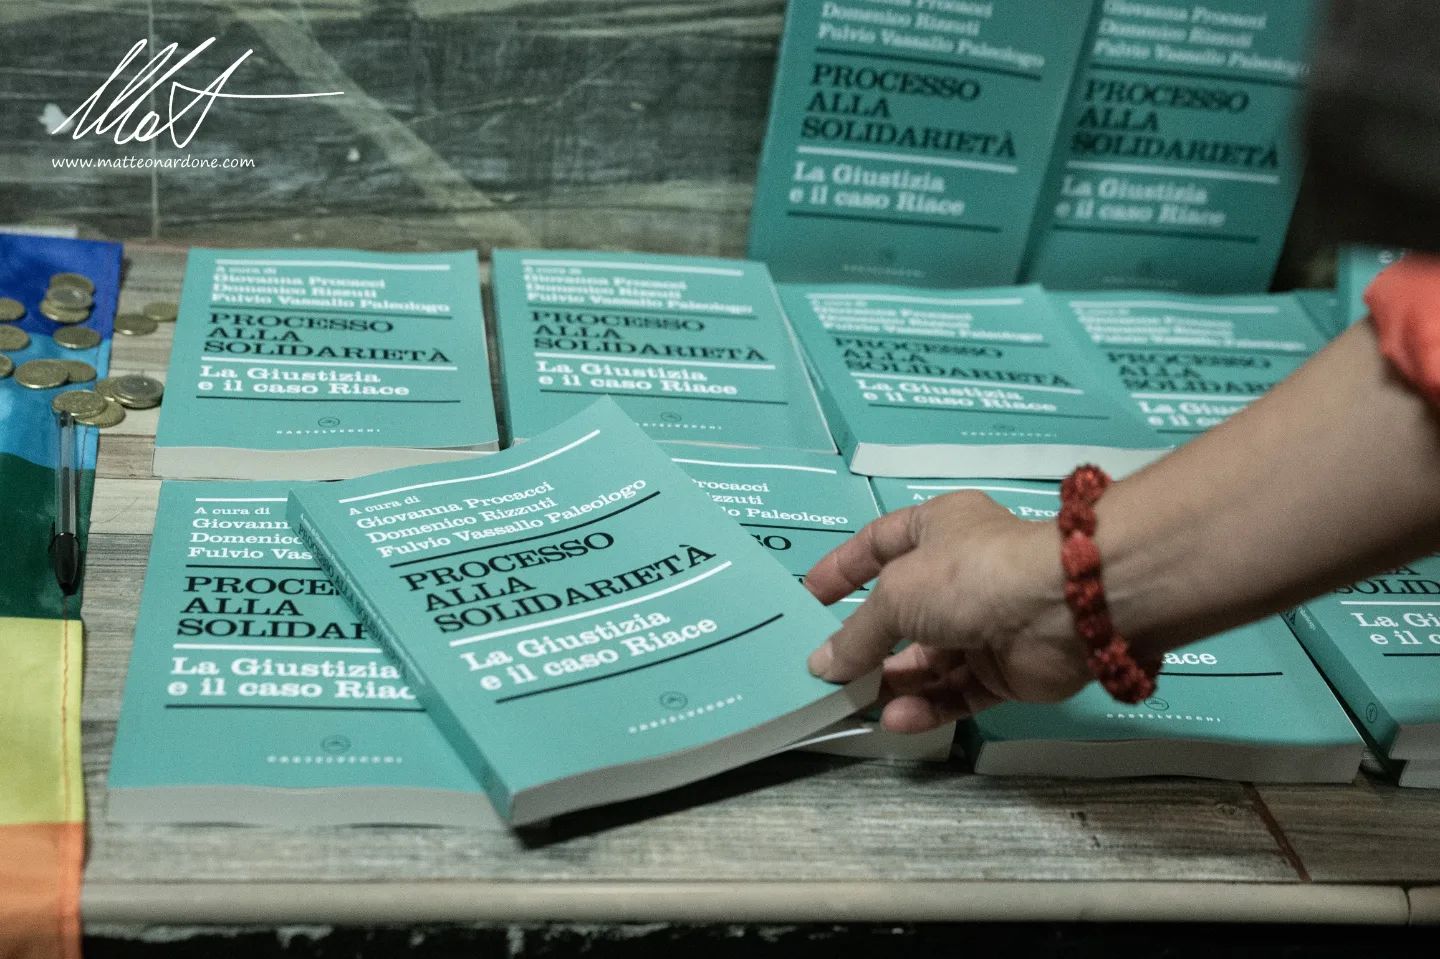 Al Csoa La Strada presentato il libro “Processo alla solidarietà. La Giustizia e il caso Riace” alla presenza di Mimmo Lucano